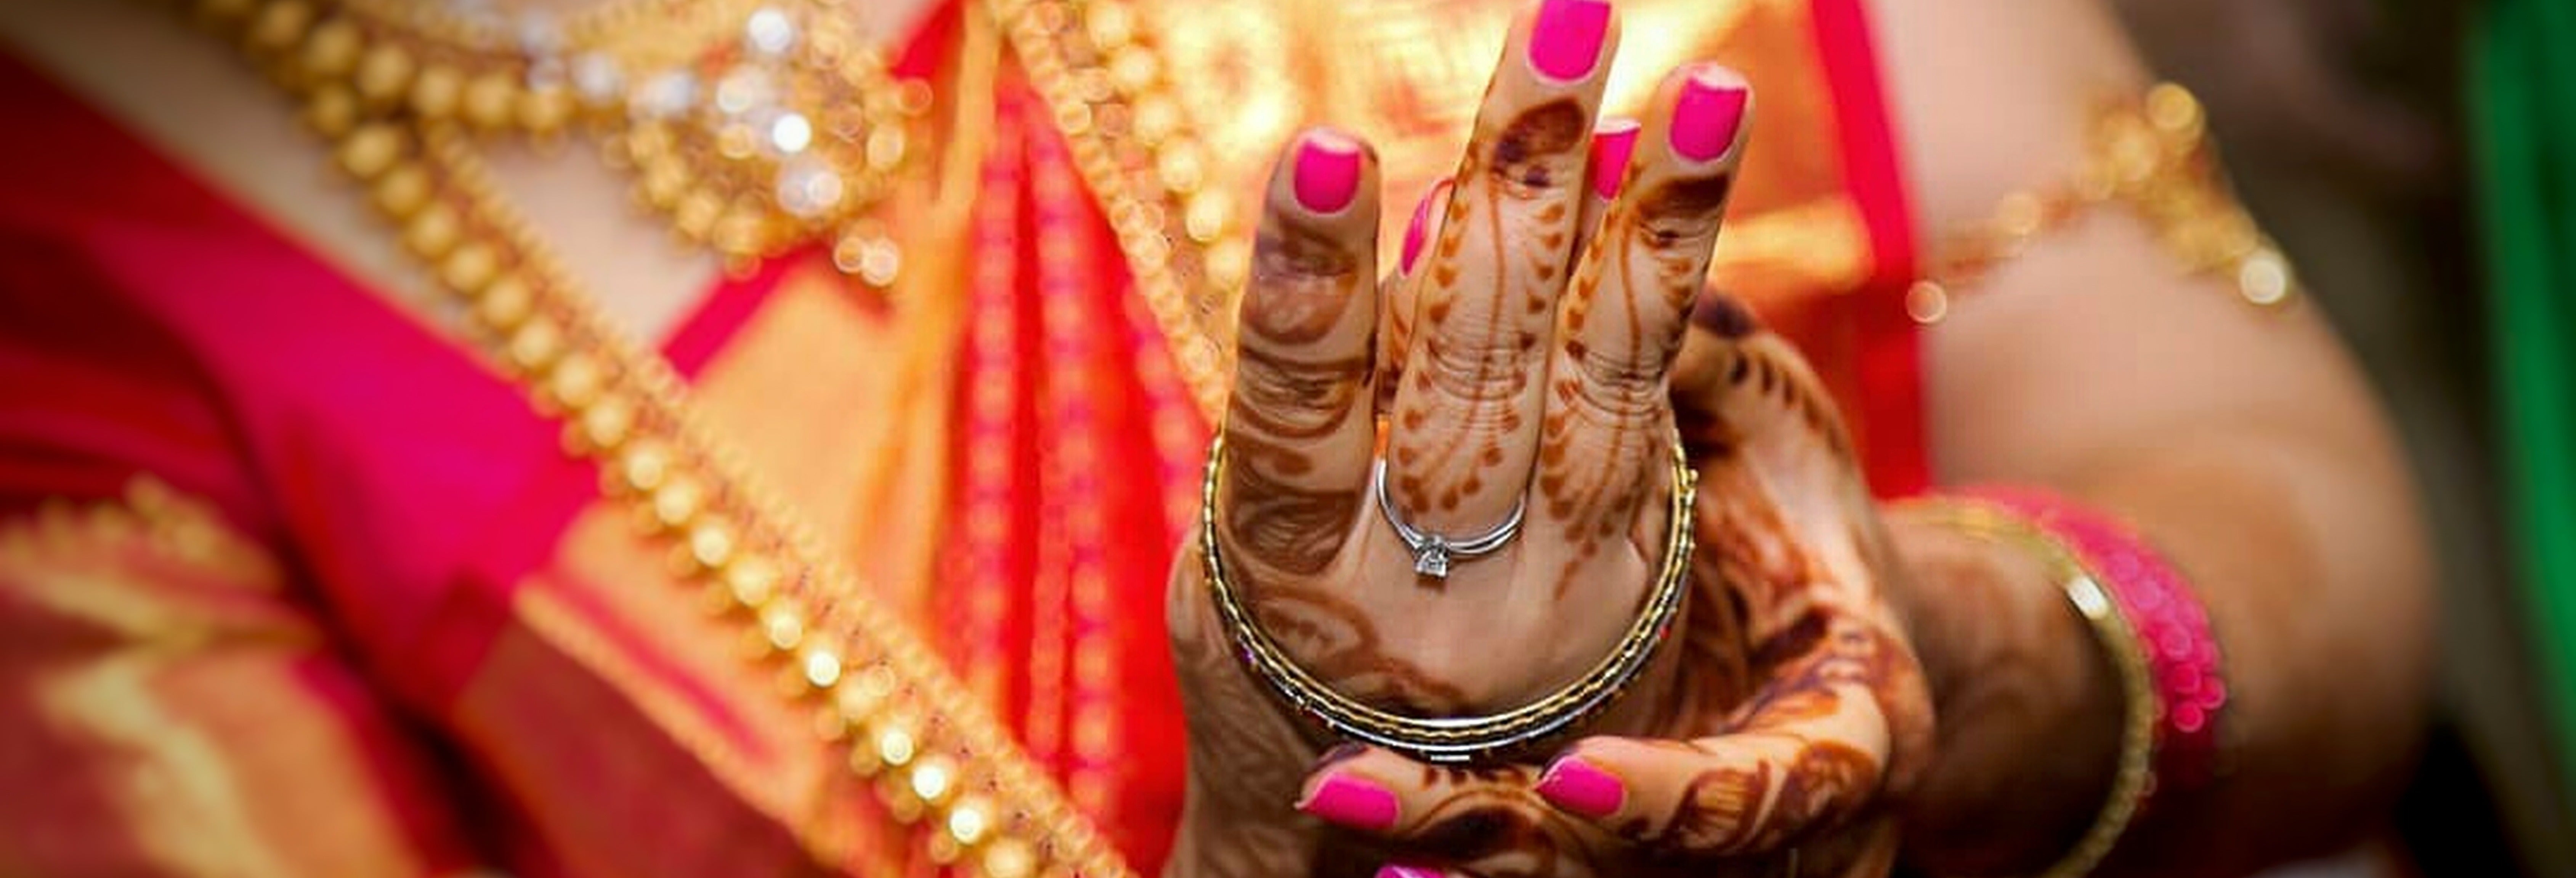 Casamento hindu. Case seguindo o ritual tradicional!